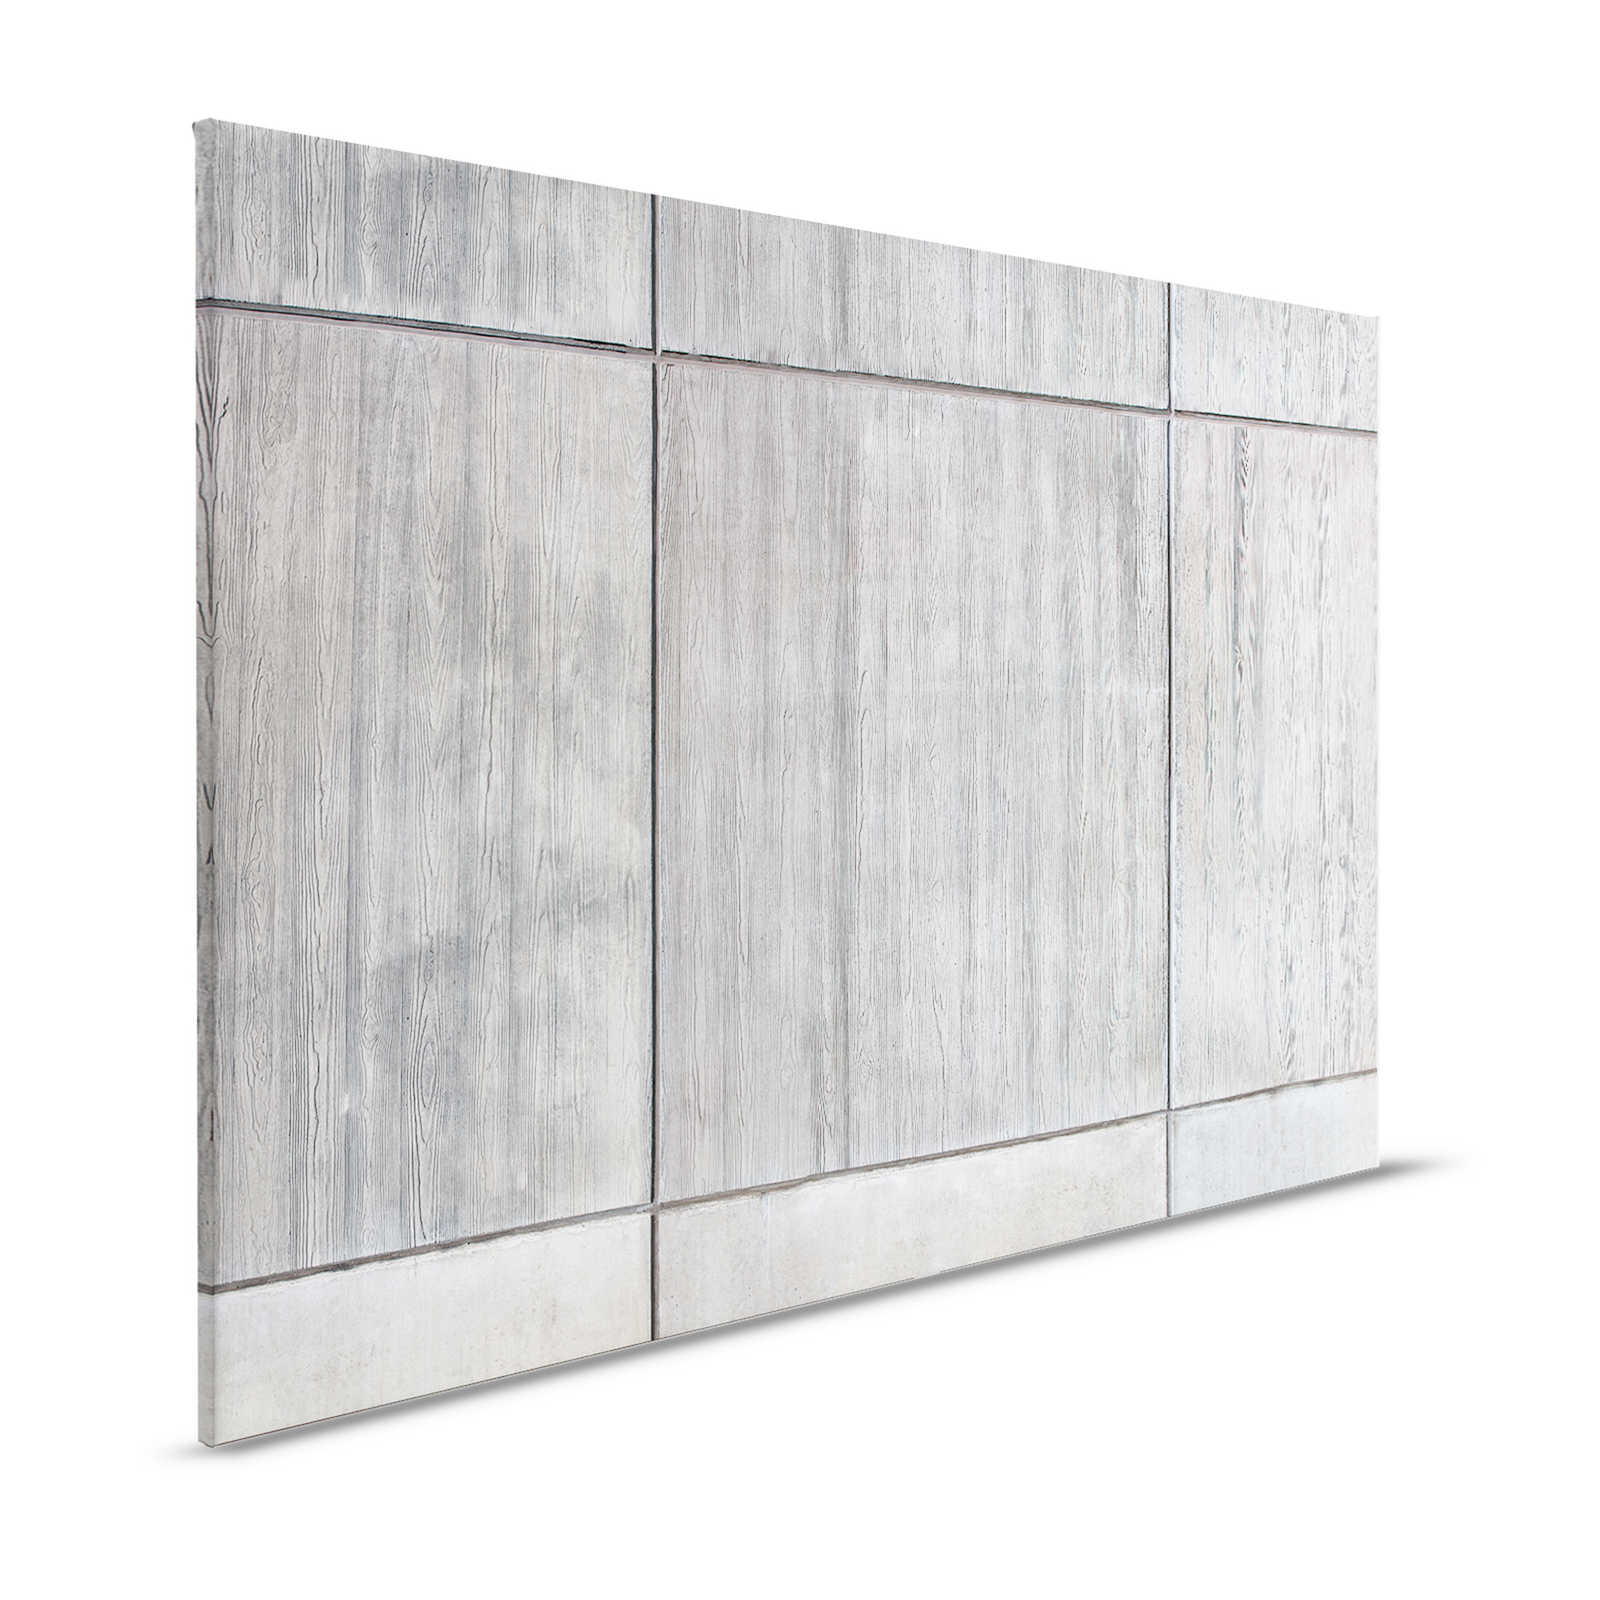 Betonplatten Leinwandbild mit Bretterschalung und Holzmaserung – 1,20 m x 0,80 m
